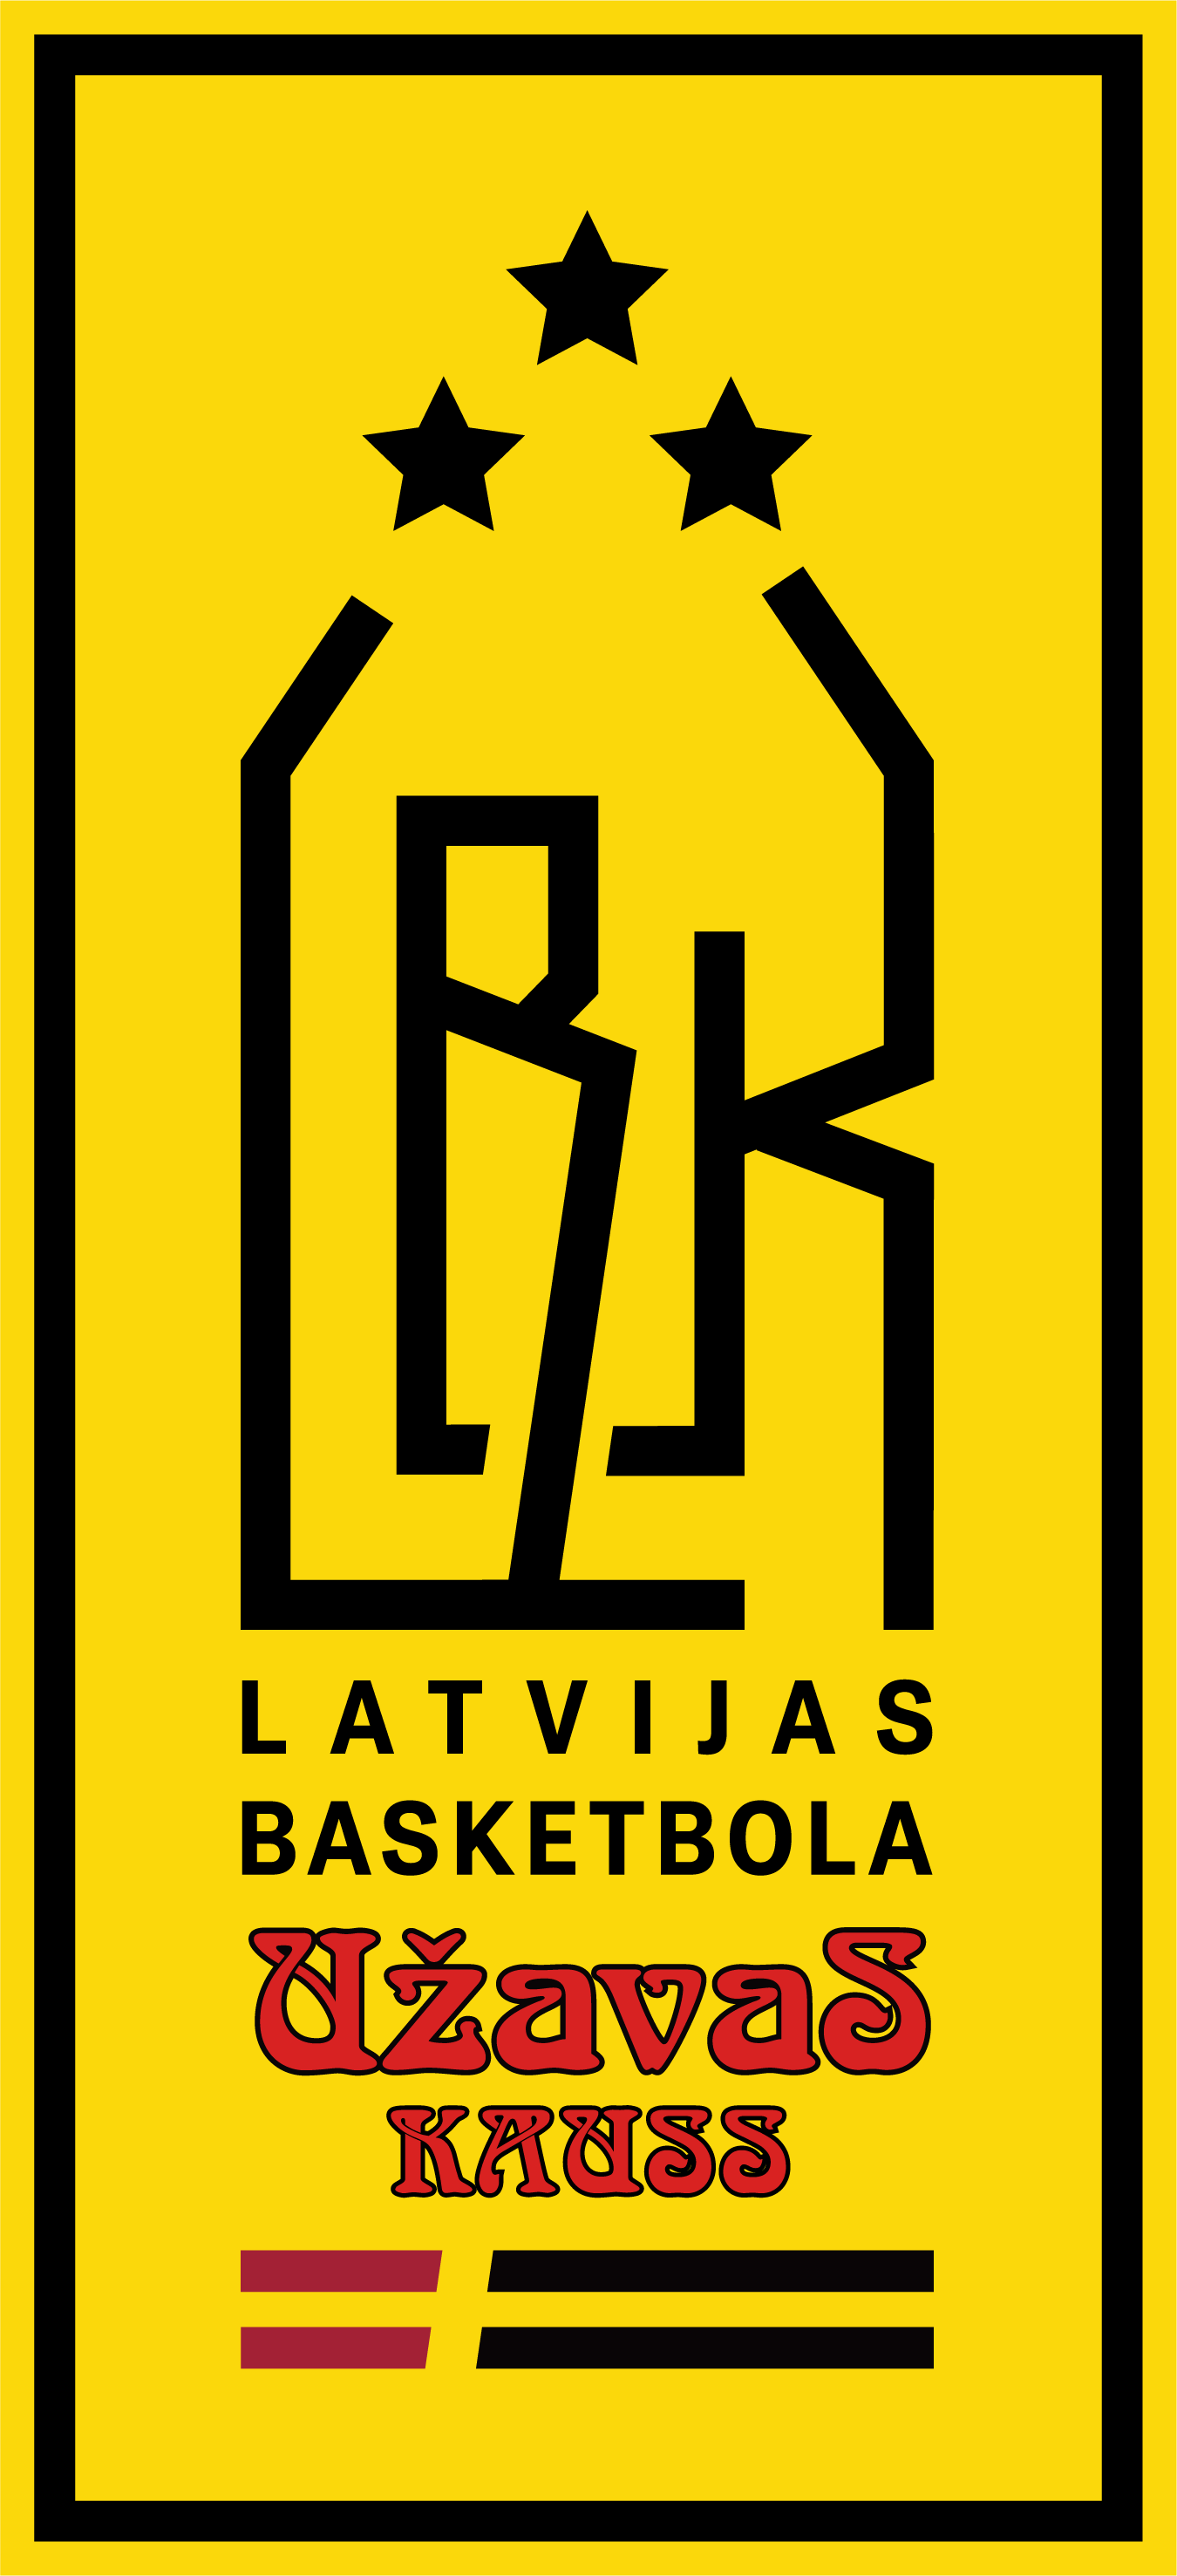 Latvijas basketbola Užavas kauss: 14. septembrī izloze, pirmās spēles oktobra vidū